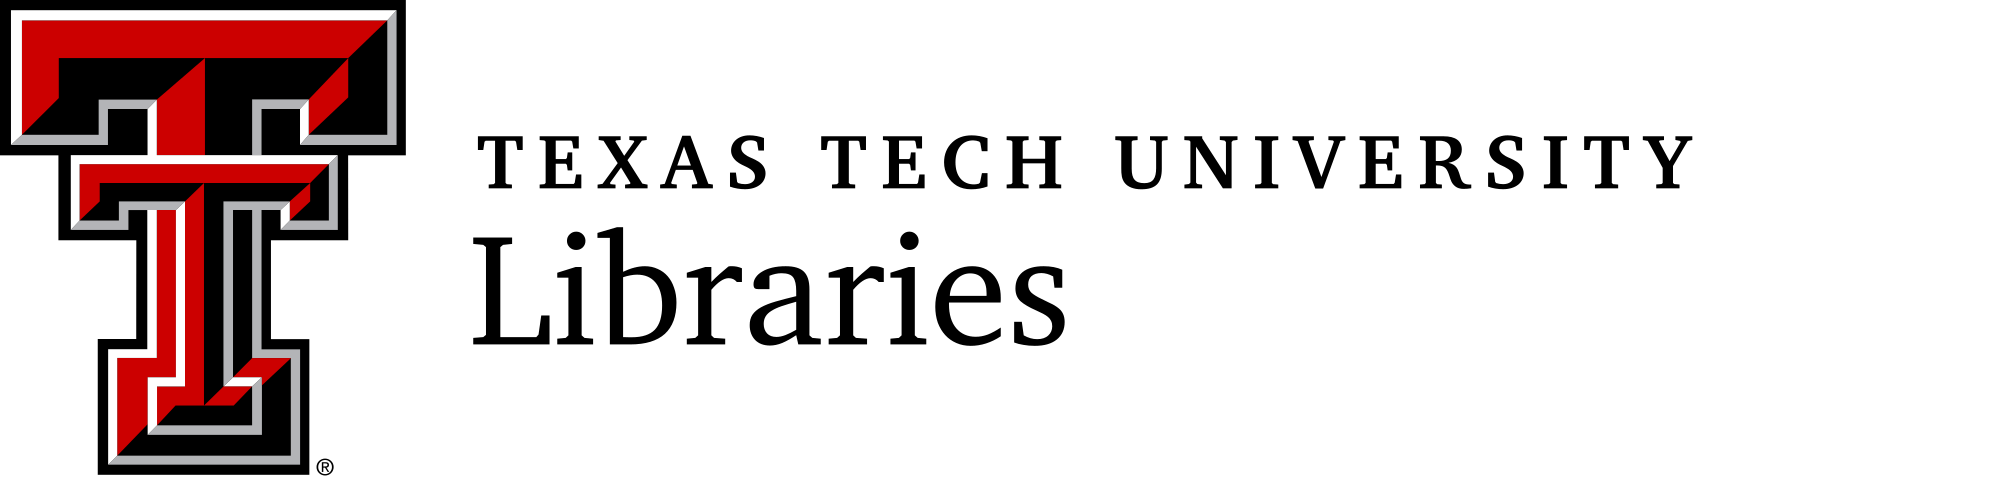 Texas Tech University Logo - Texas Tech University Libraries logo.svg